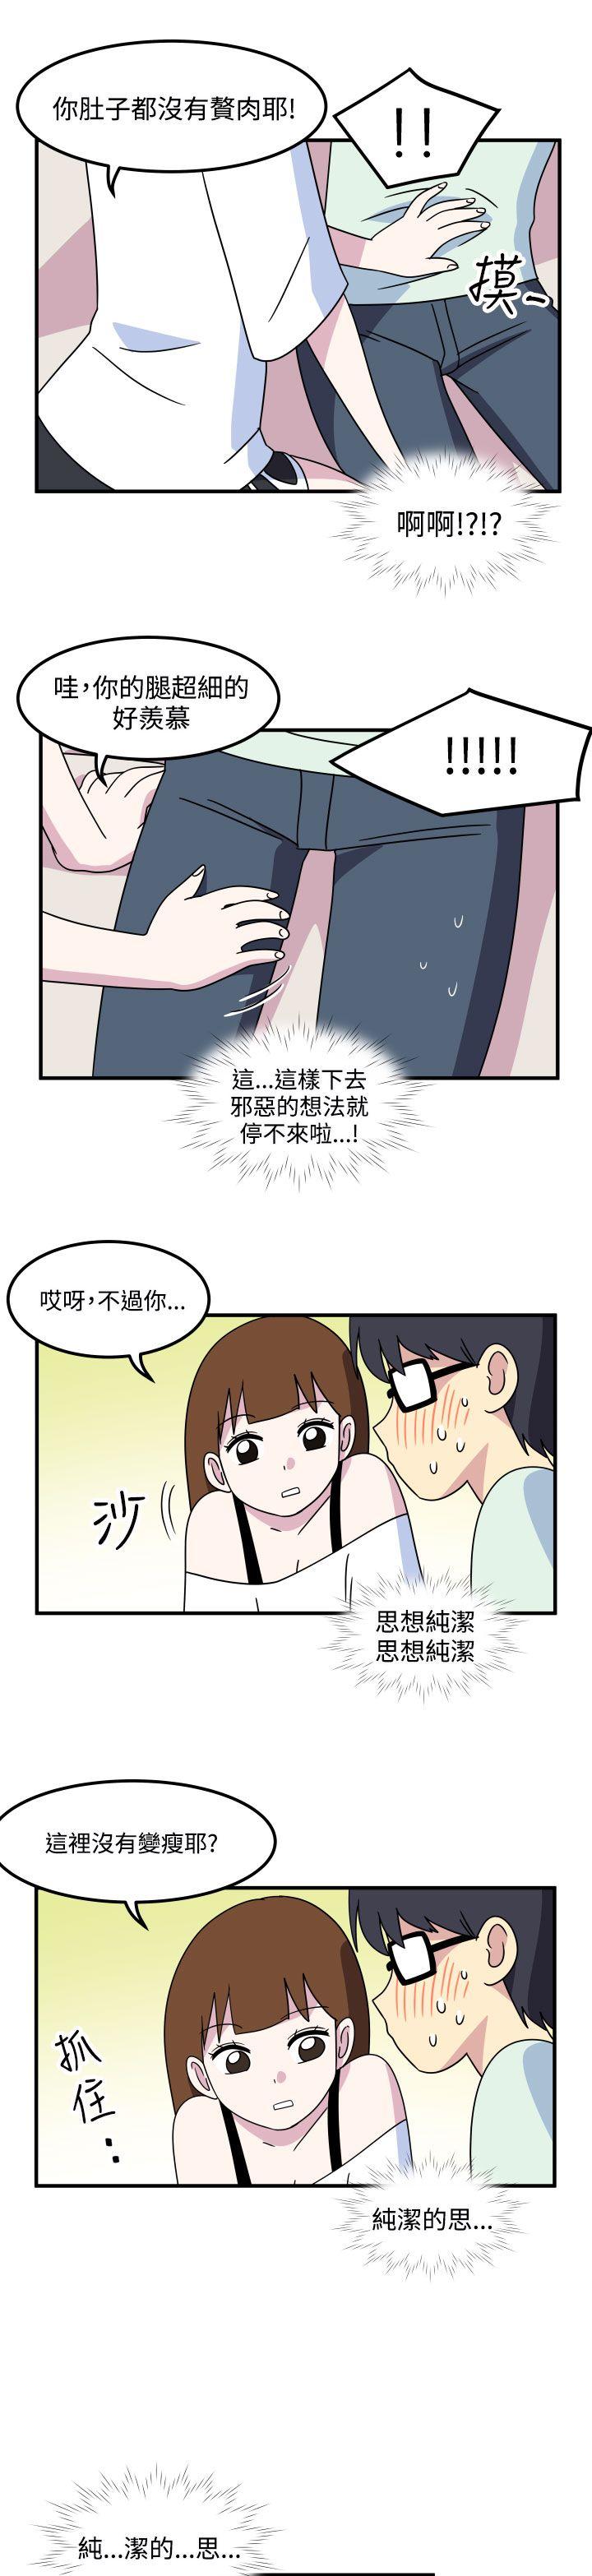 韩国污漫画 腹黑女的異想世界 第17话 11